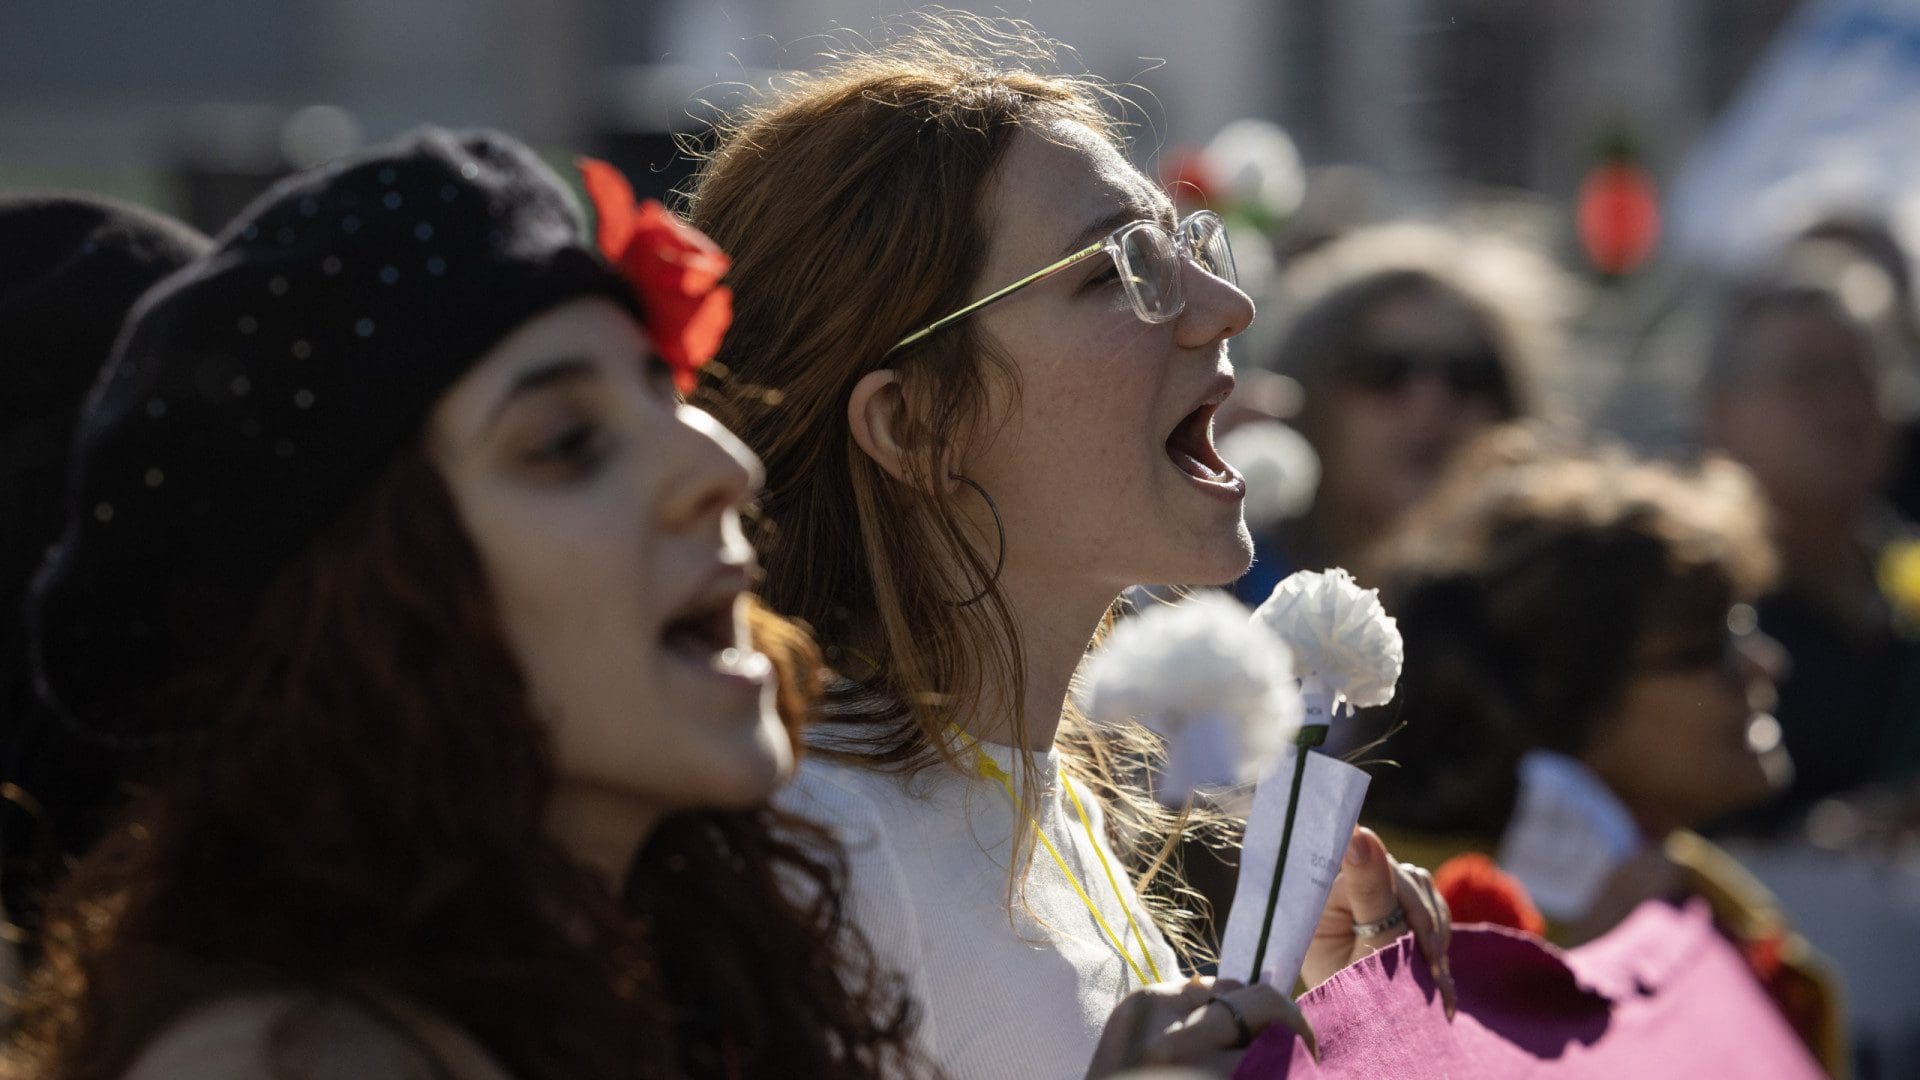 Associações de mulheres marcham em 12 cidades por mais direitos